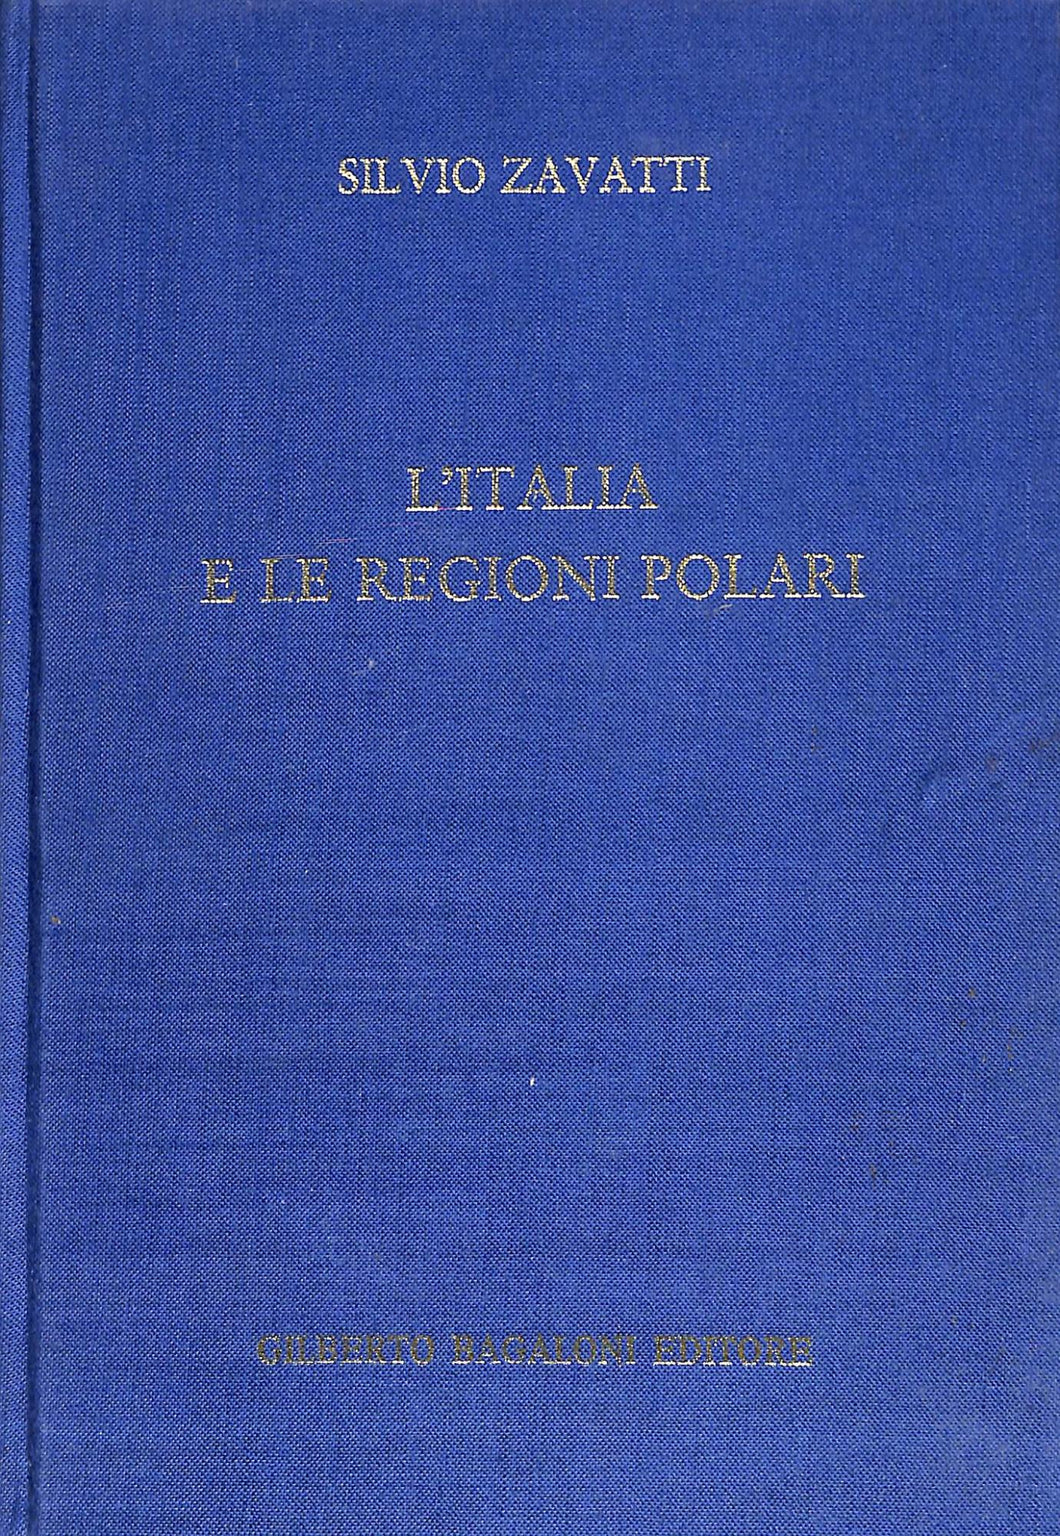 Le regioni polari artiche e l'Italia : / Silvio Zavatti